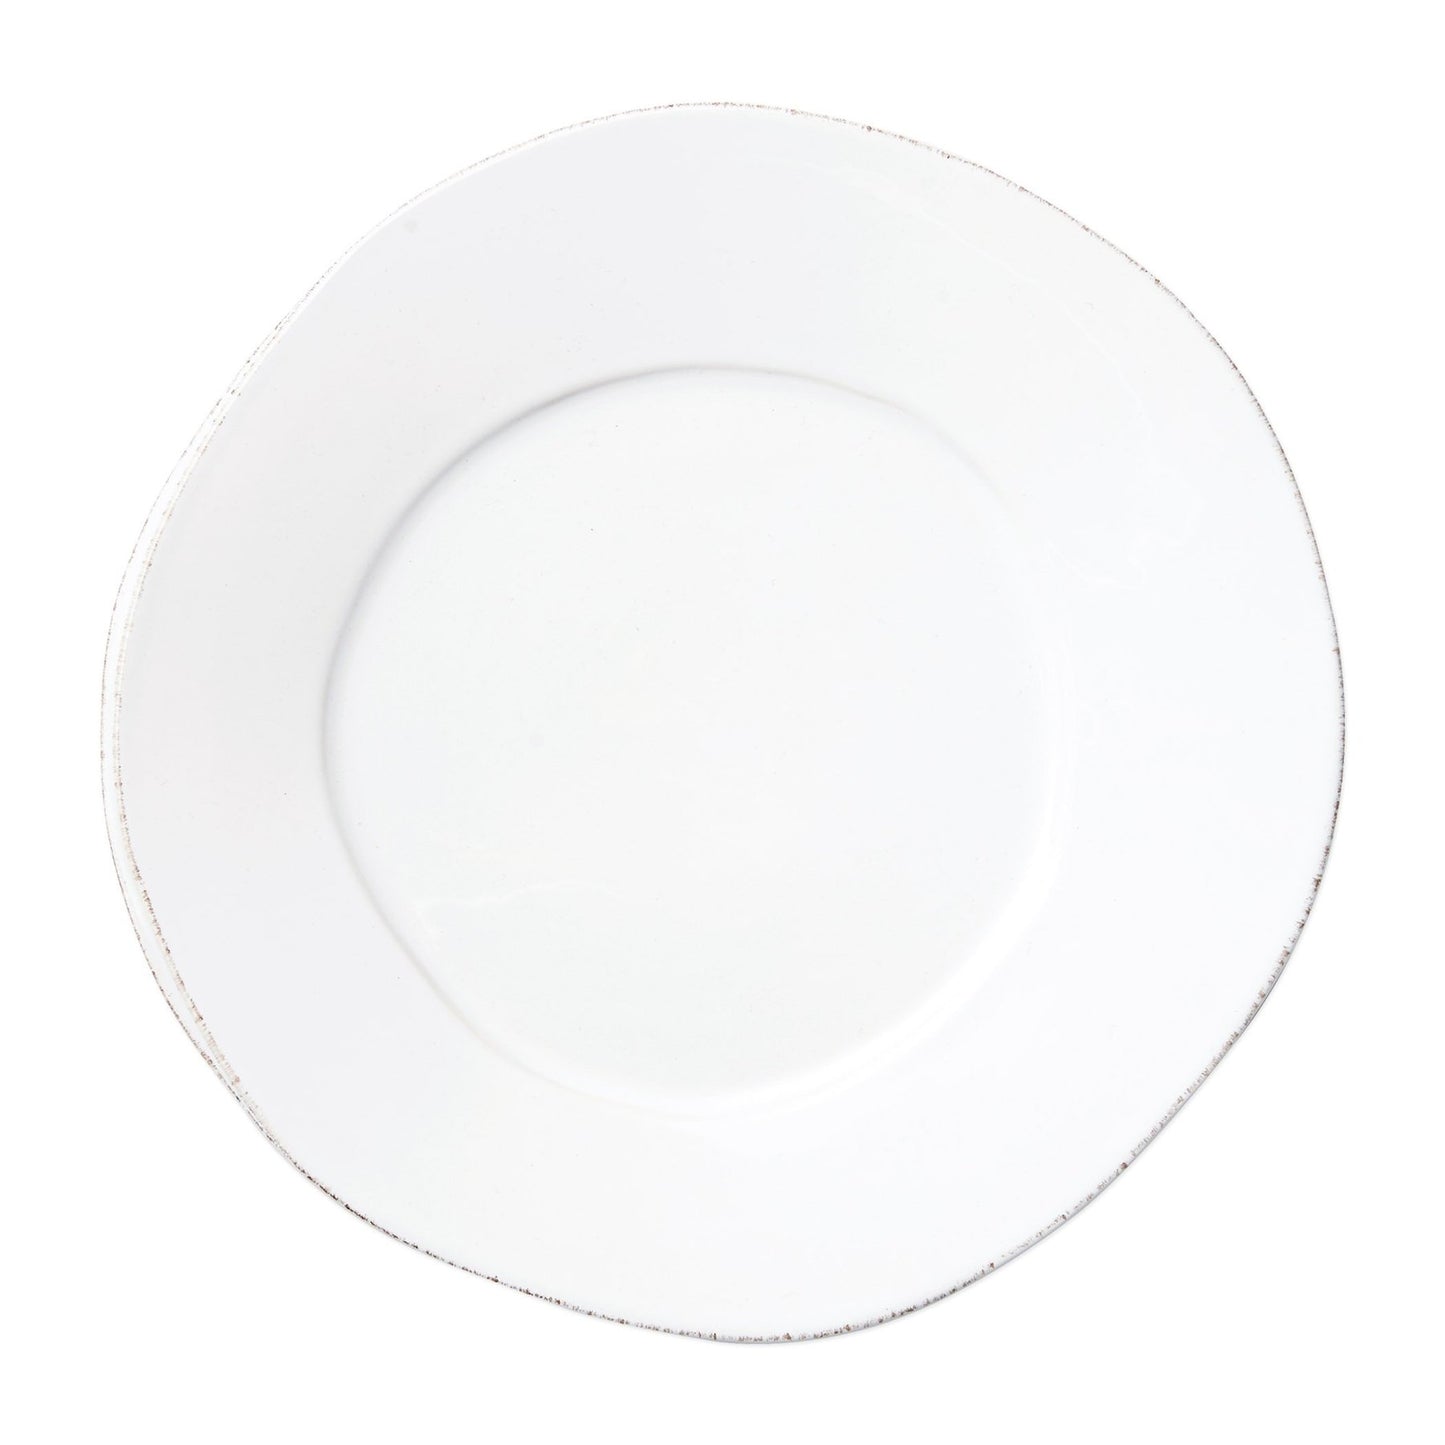 white dinner plate on white background.